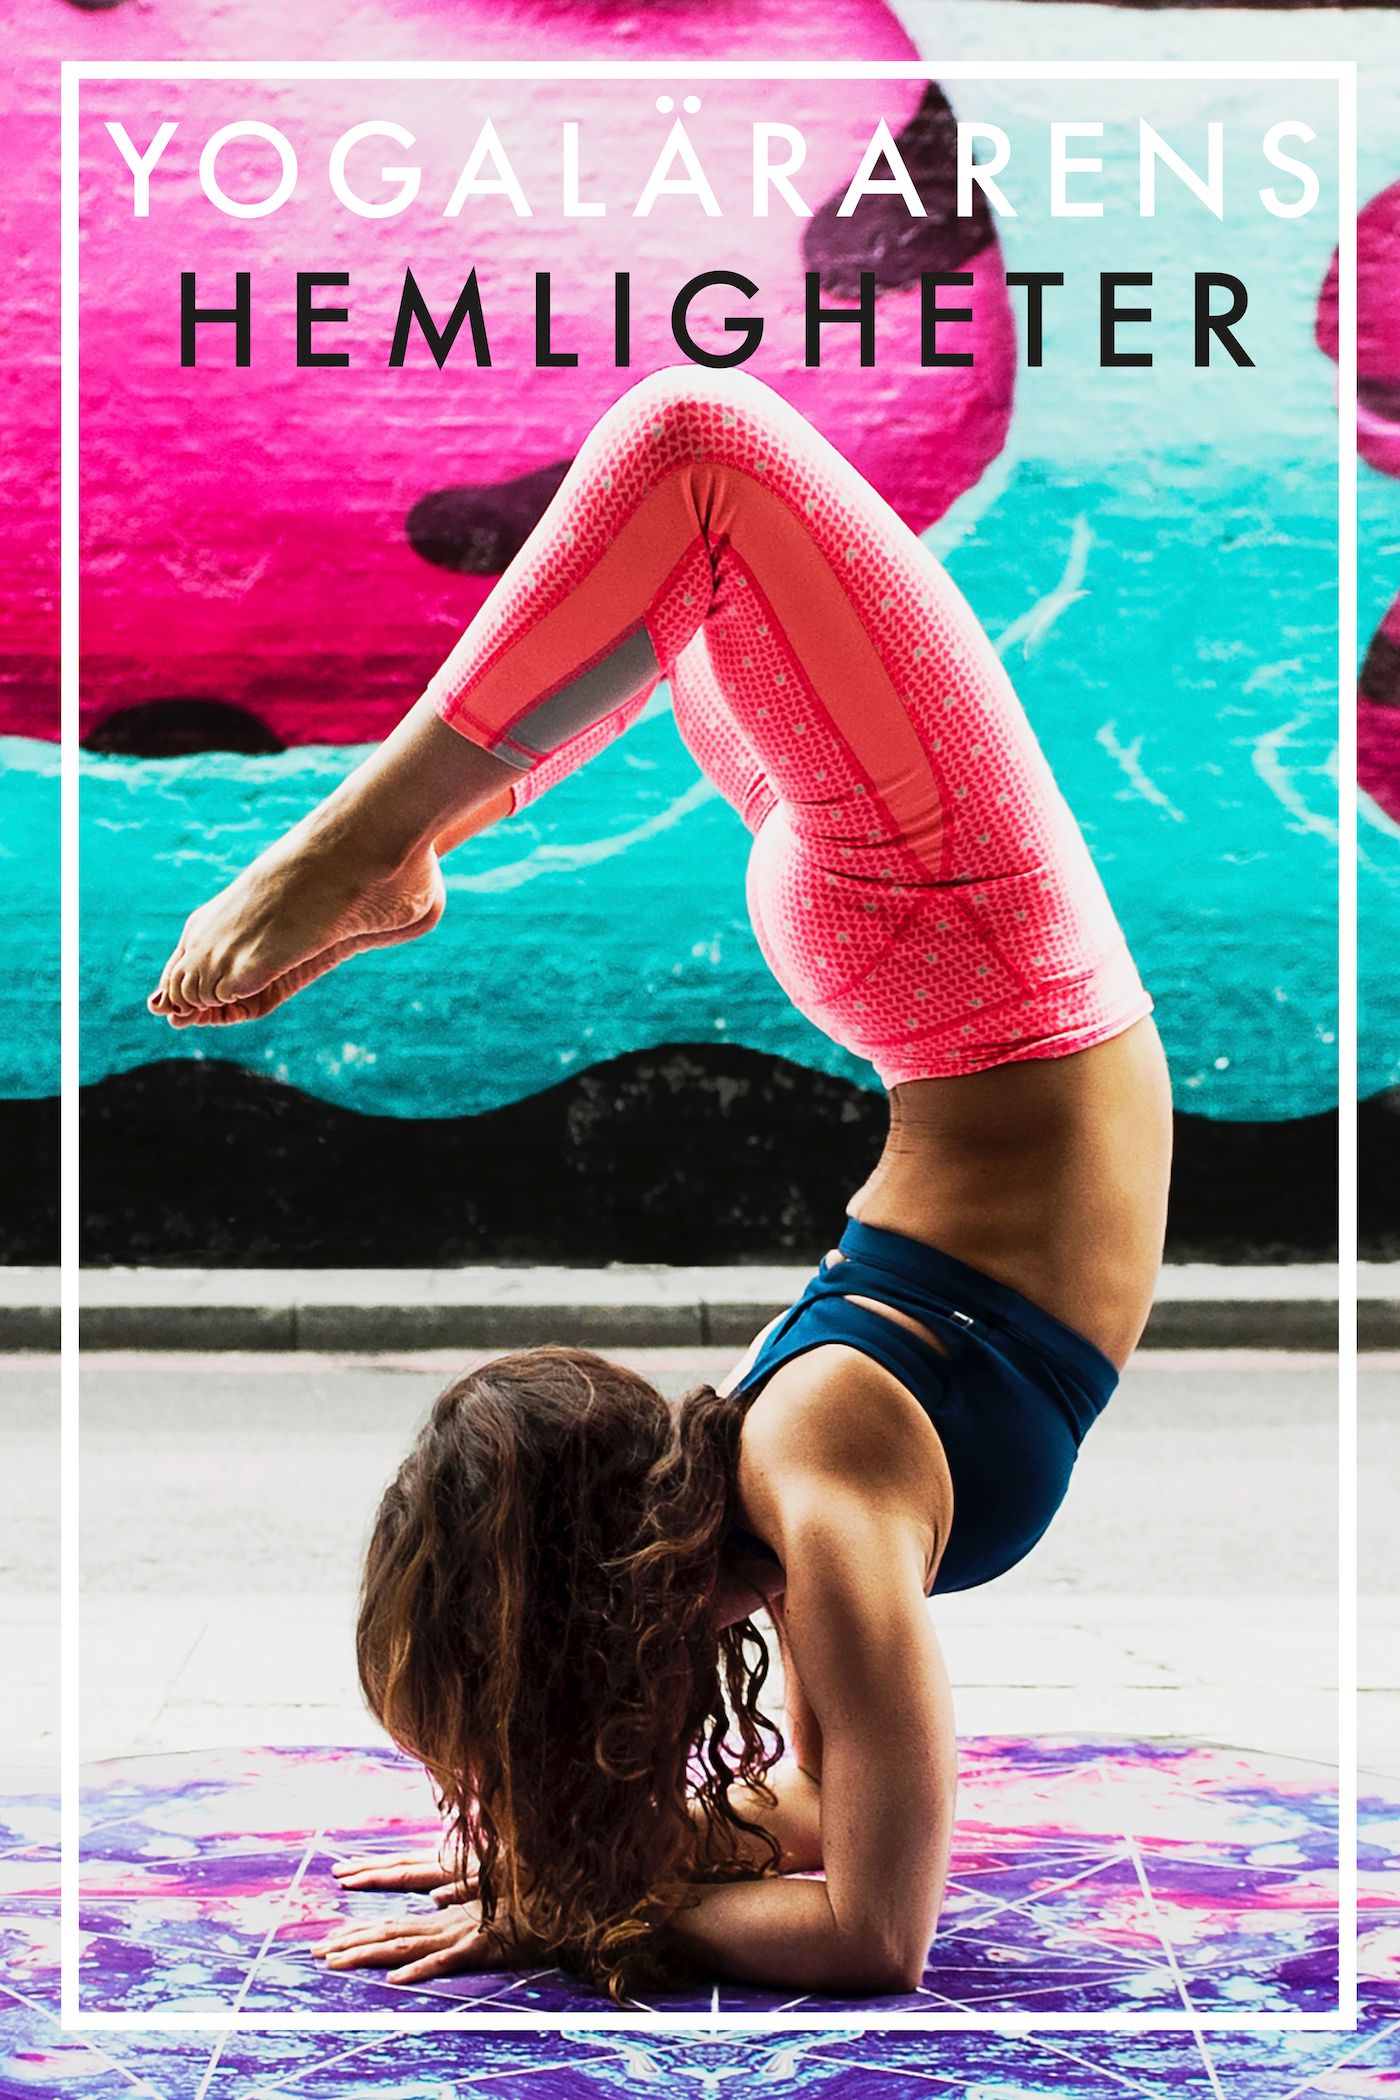 Yogalärarens hemligheter (Epub2), e-bok av Nicotext Förlag